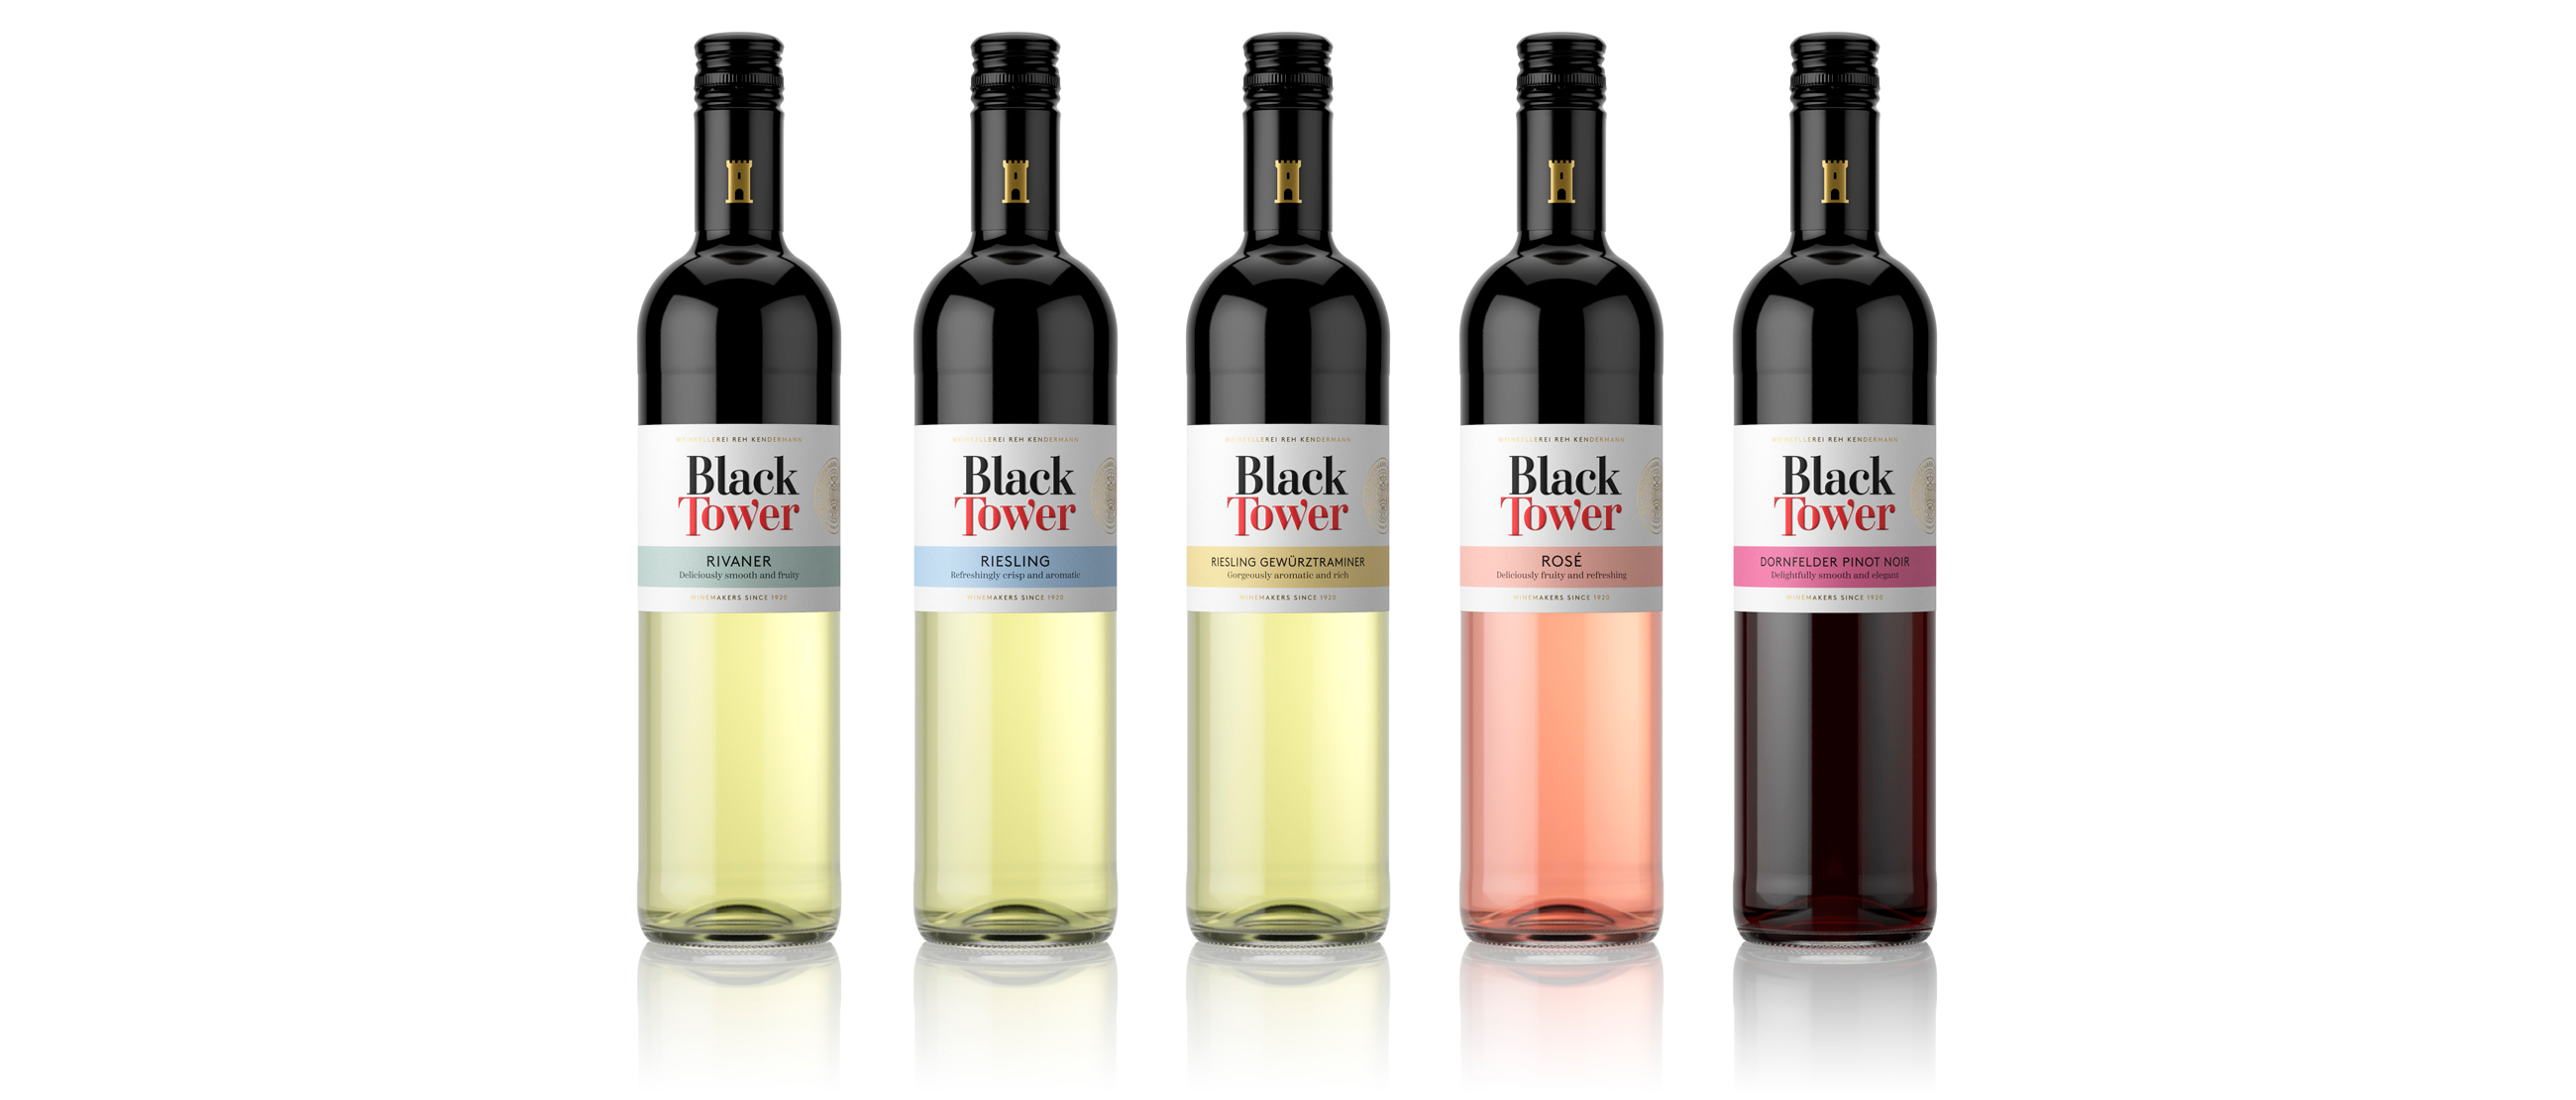 Black Tower redesign pakningsdesign vist på vinflasker packaging design product series of wine bottles